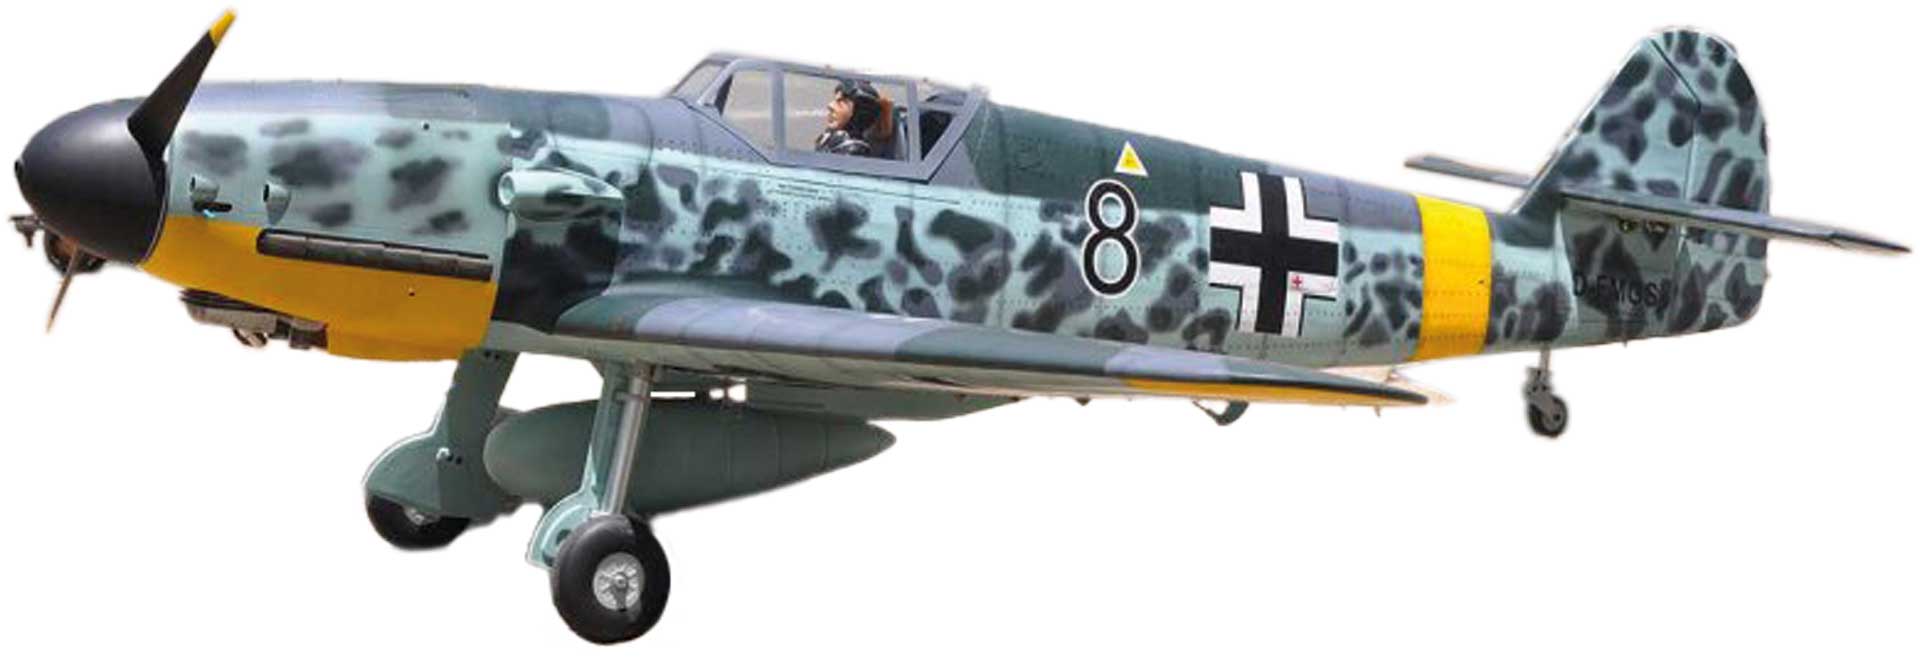 BLACK HORSE Messerschmitt Bf-109 ( ME-109 ) 2255mm ARF Warbird